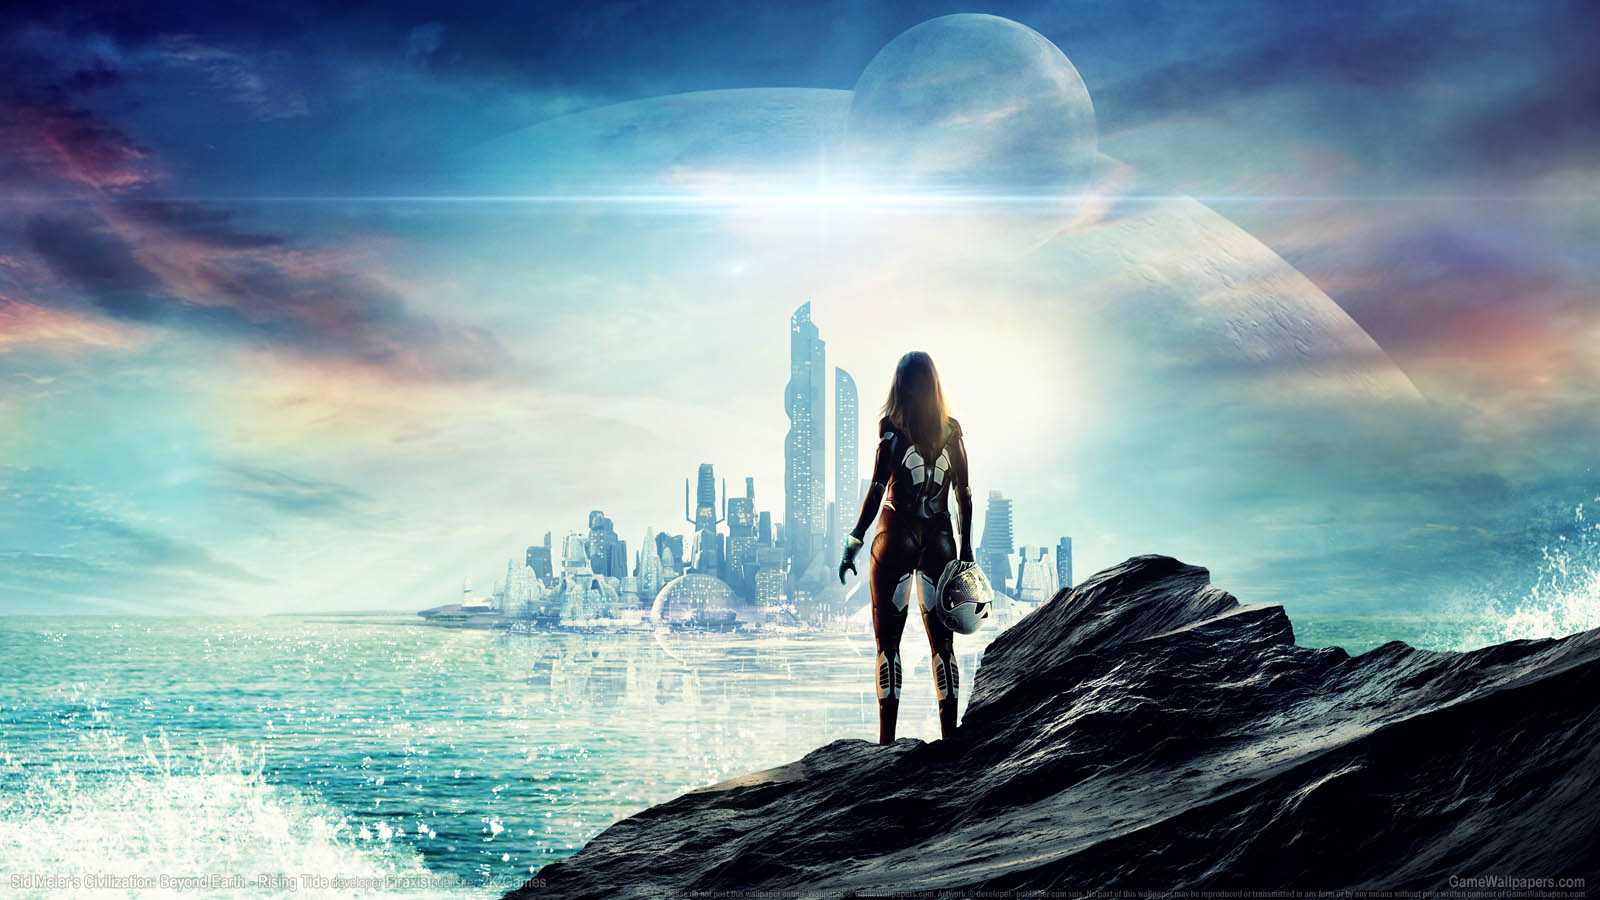 Sid Meier's Civilization: Beyond Earth - Rising Tide wallpaper 01 1600x900